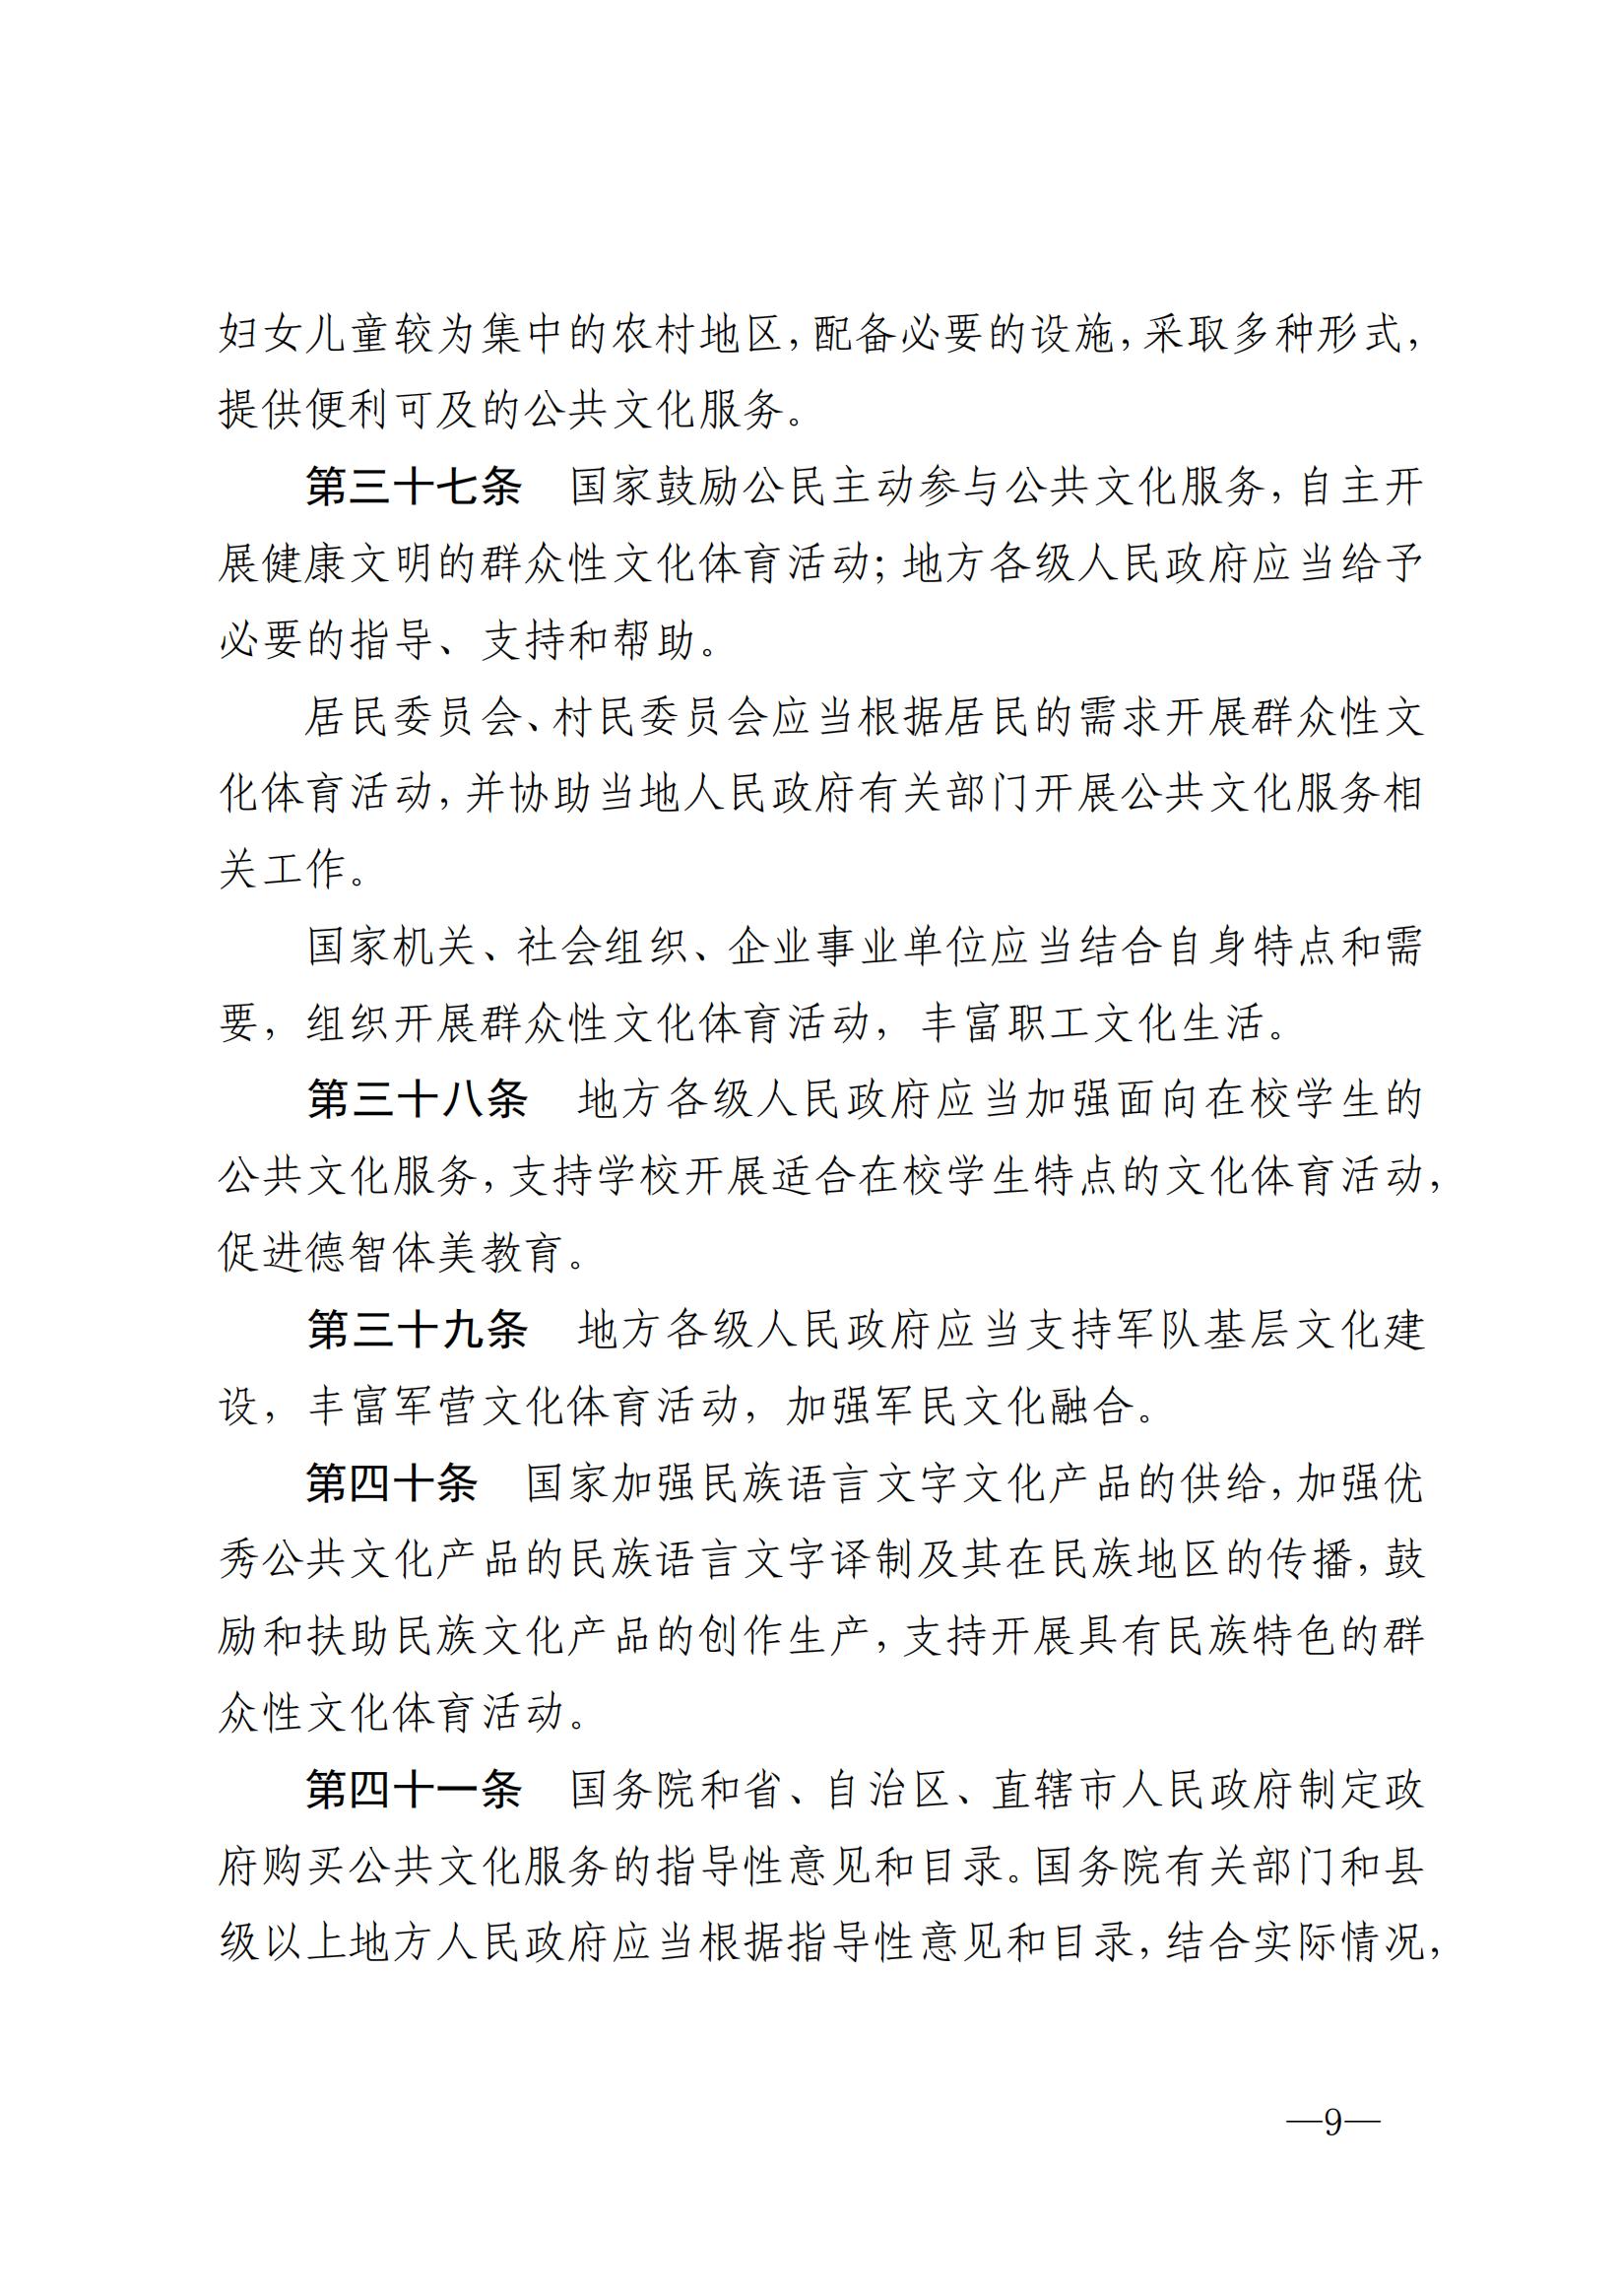 中华人民共和国公共文化服务保障法_08.jpg